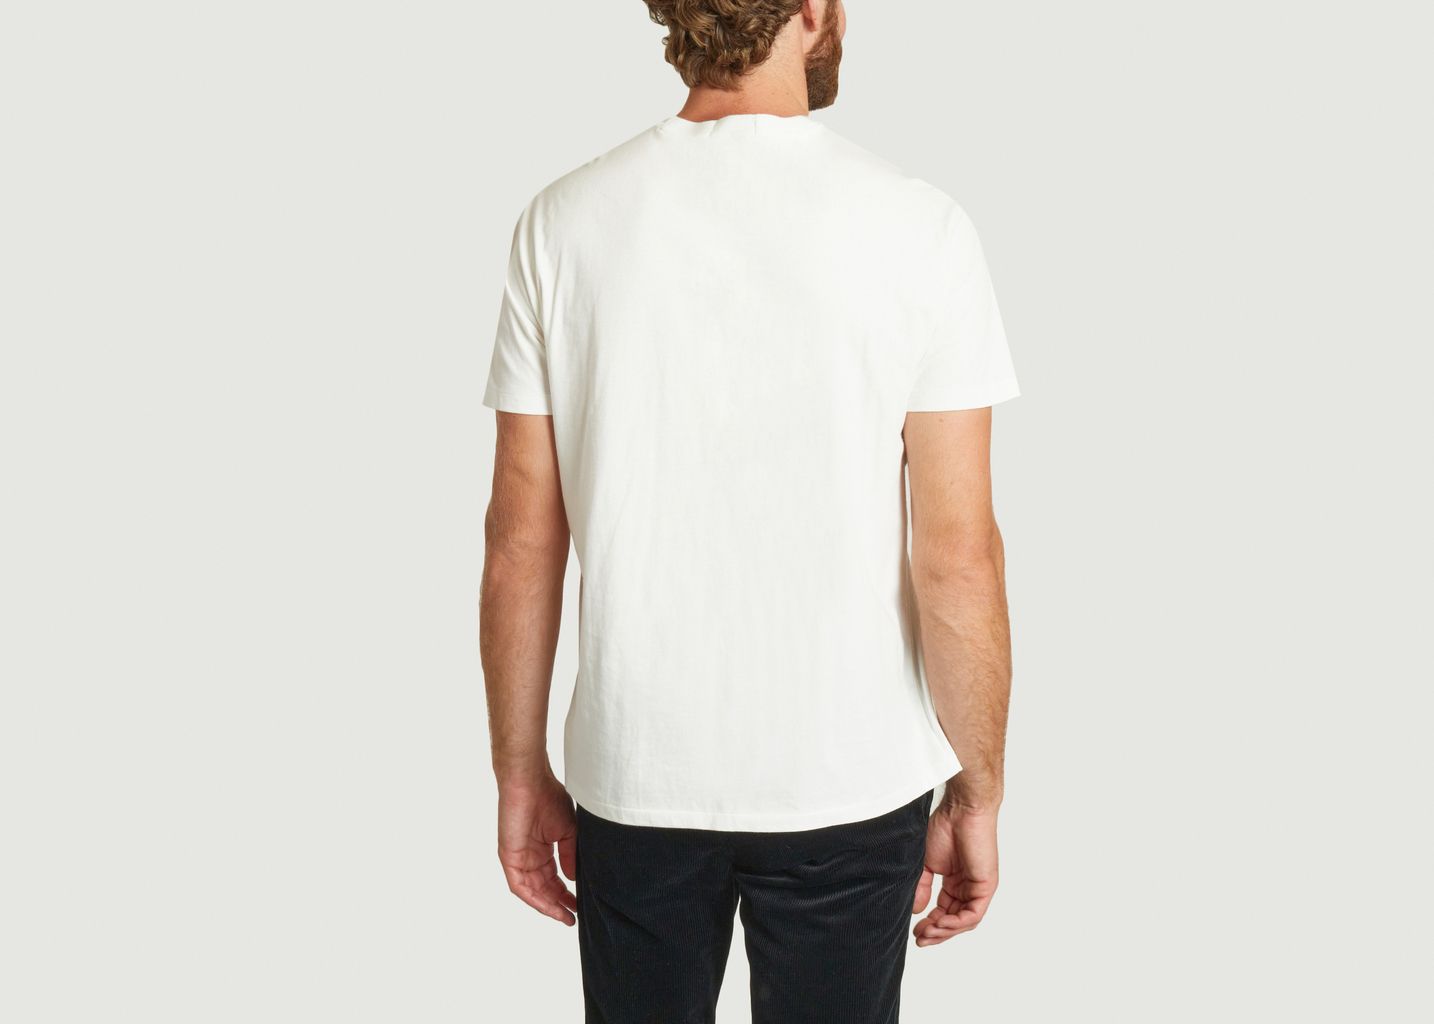  Short Sleeve T-Shirt - Polo Ralph Lauren